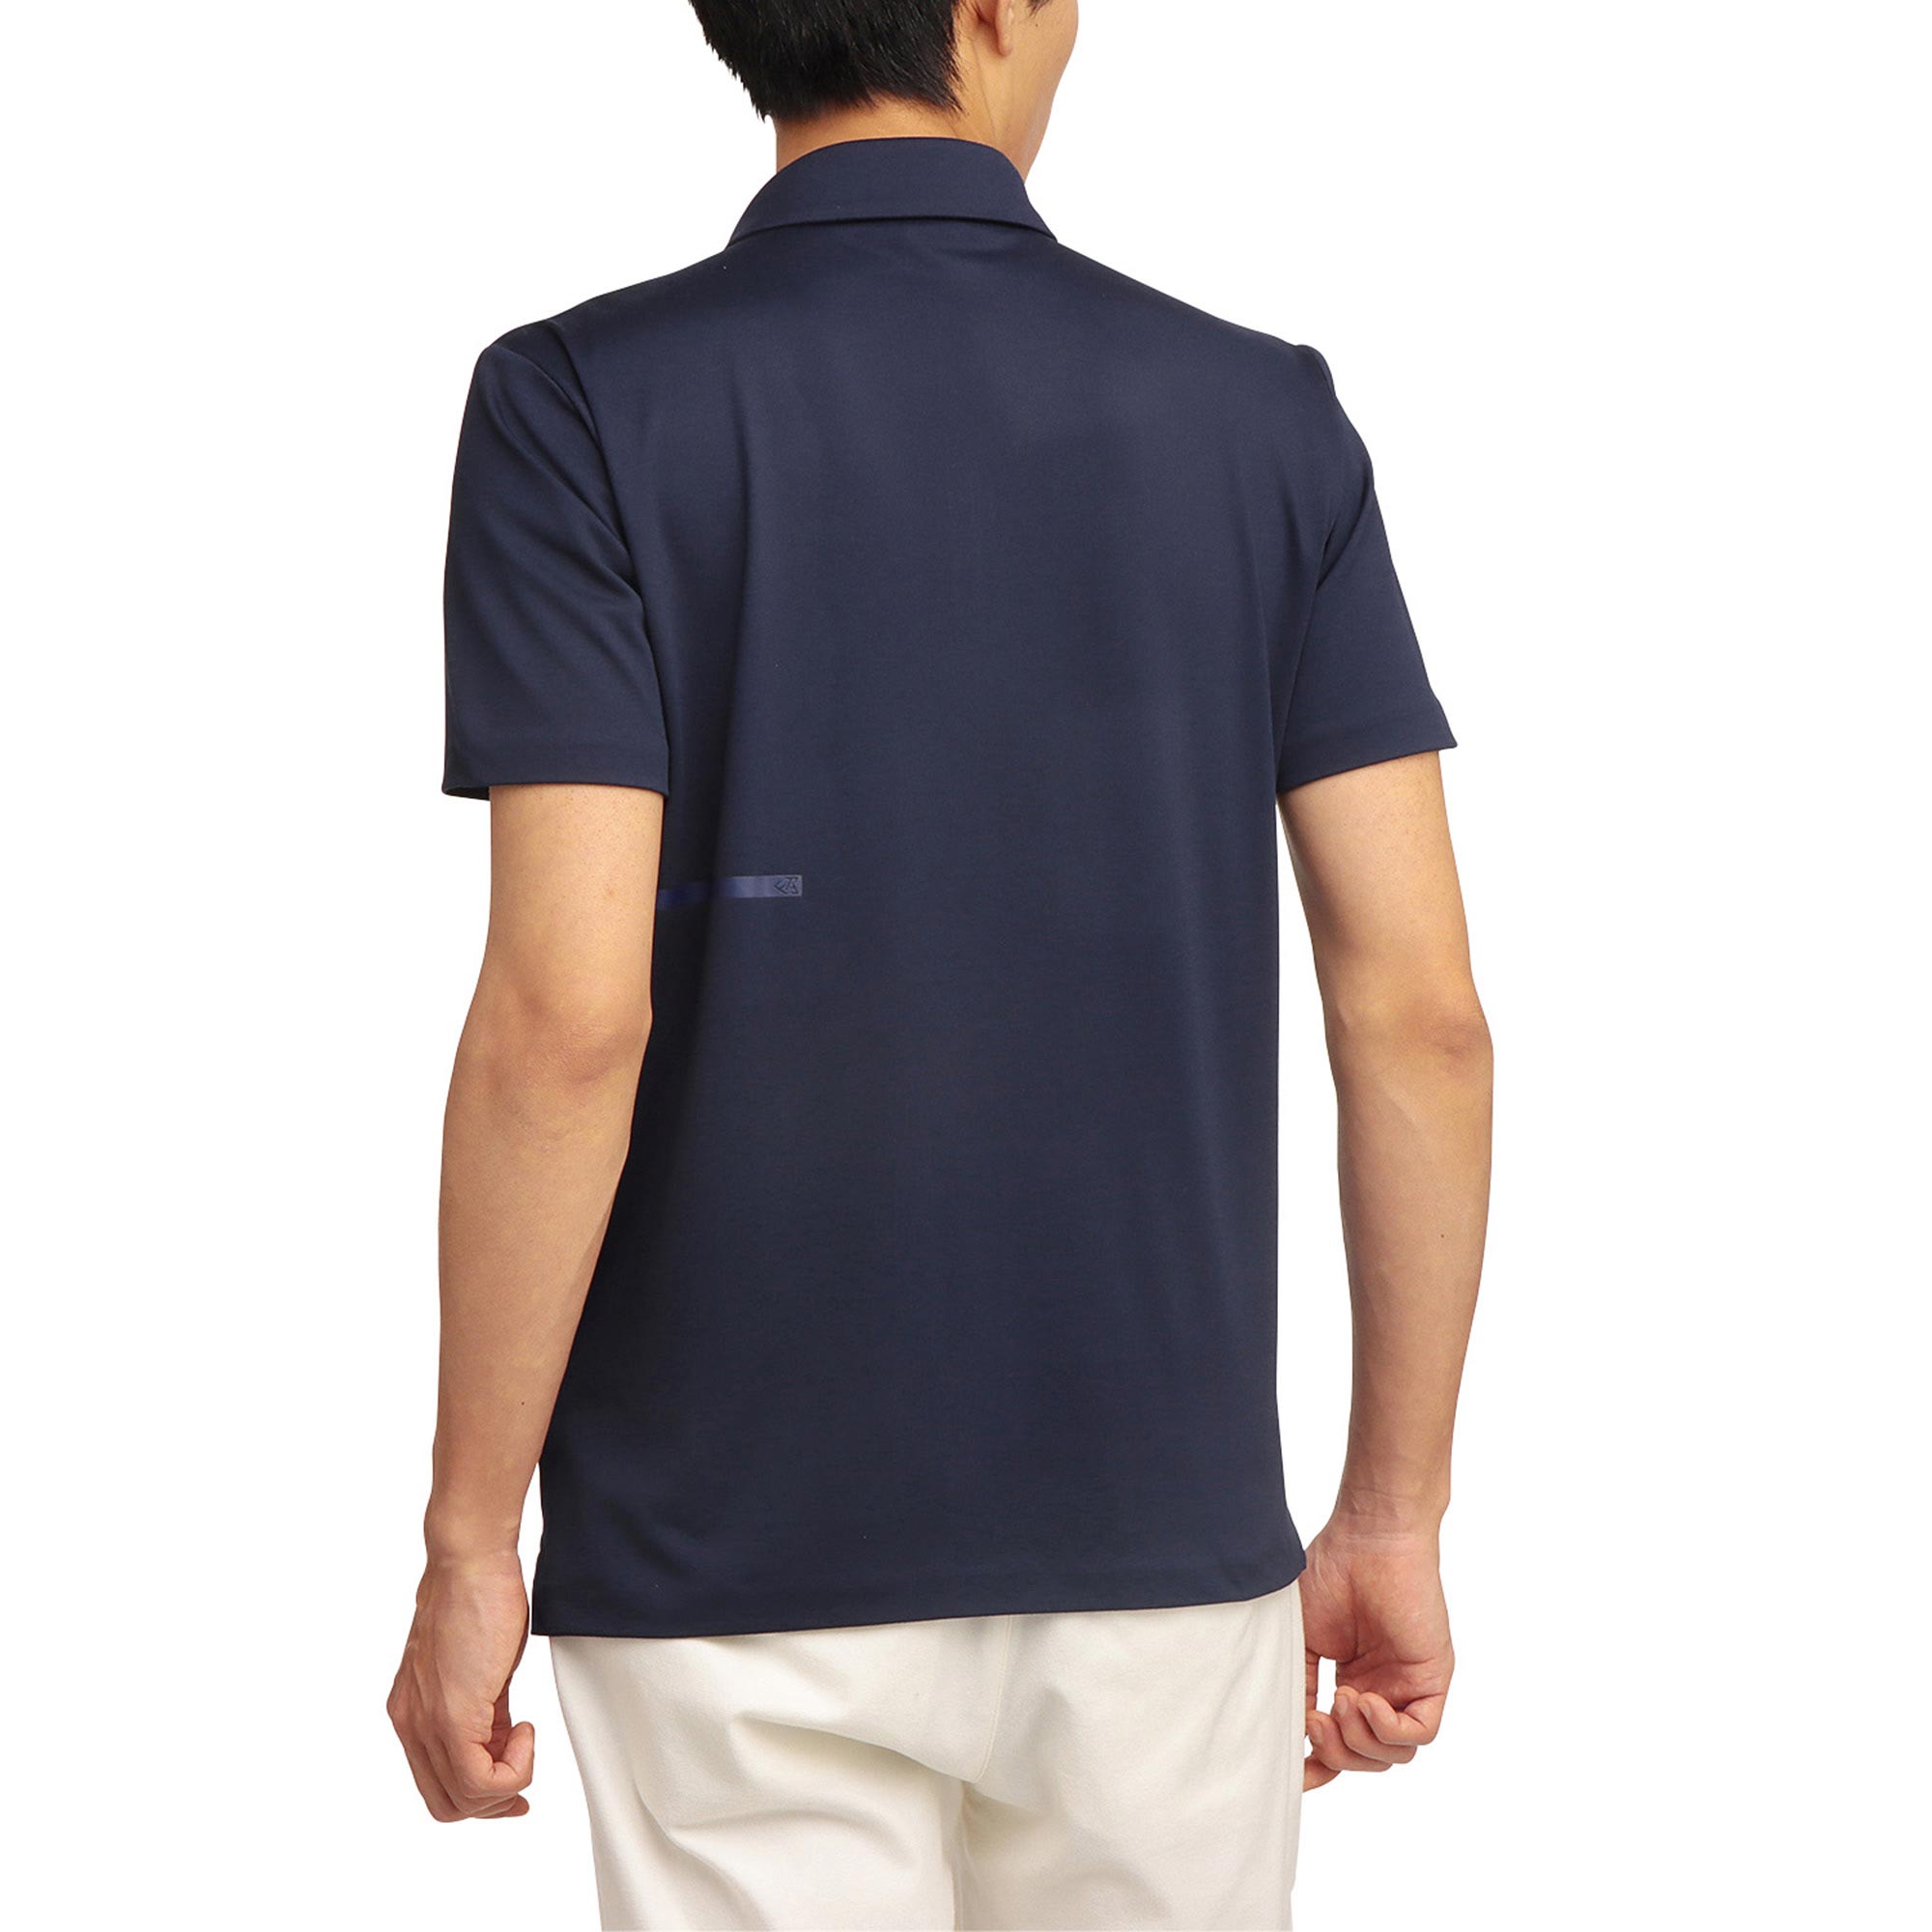 ジップアップ半袖シャツ[メンズ]|E2MA1501|半袖シャツ|ゴルフウエア